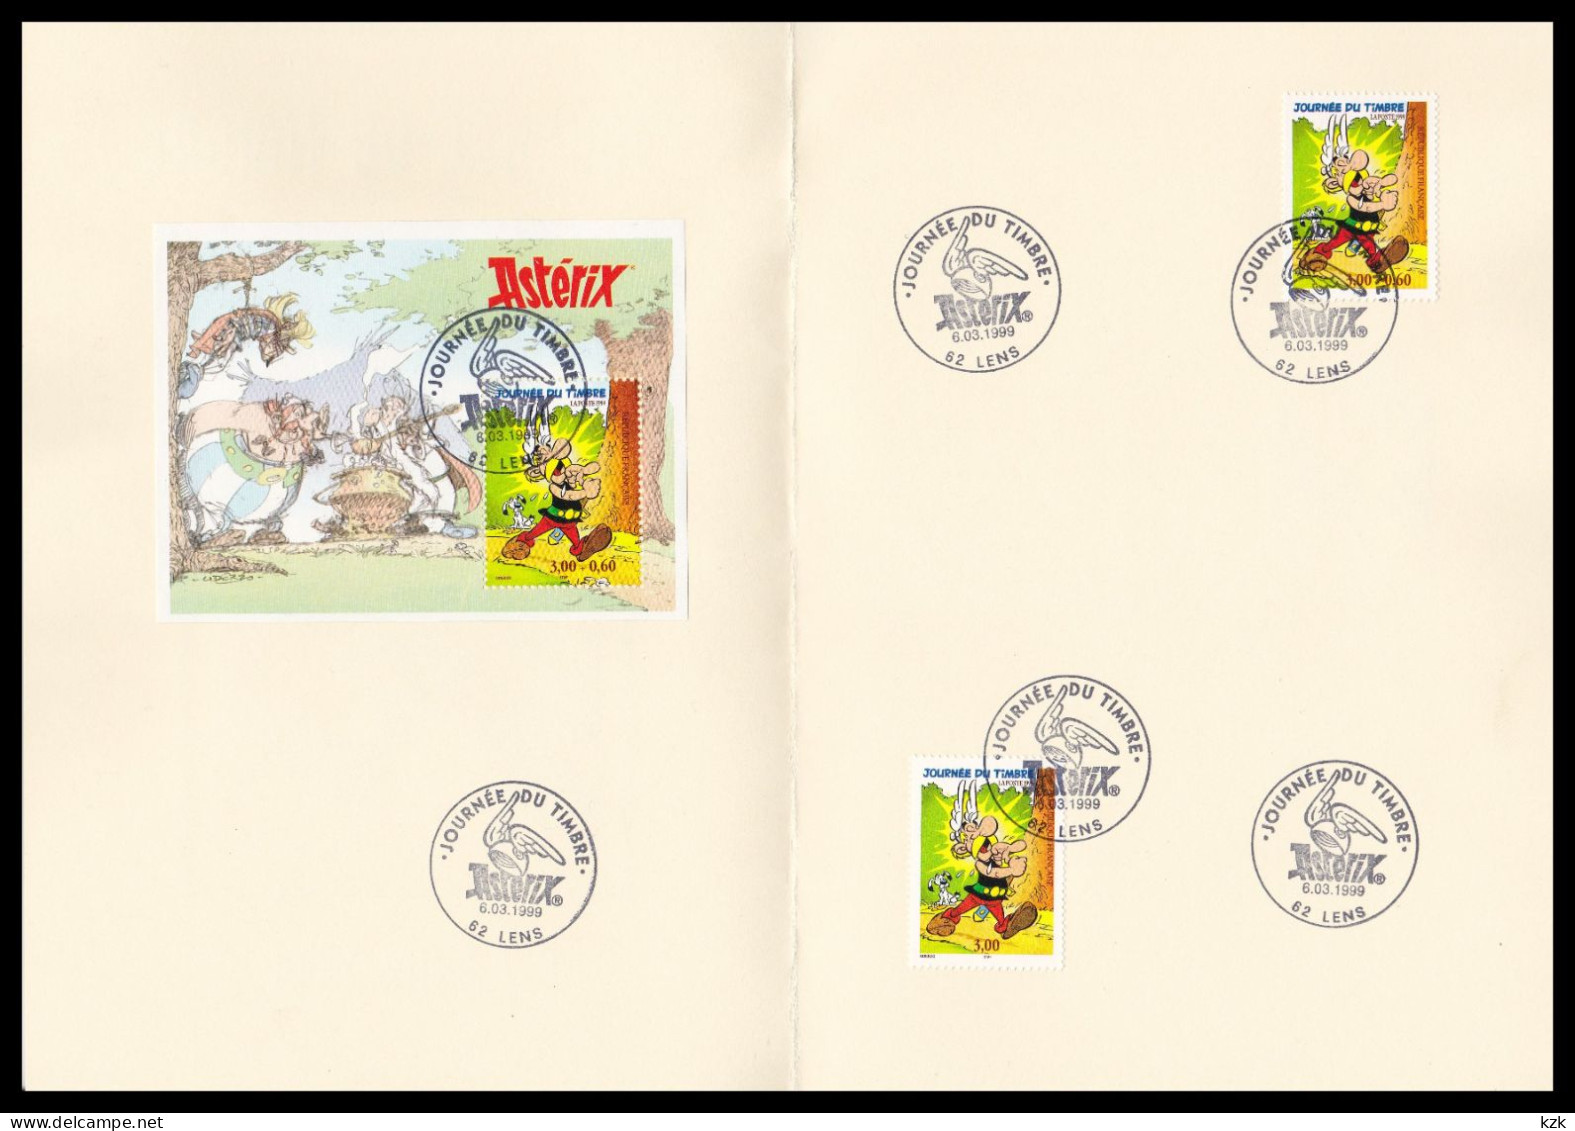 2 09	9902	-	J Du Timbre - Lens 6/03/1999 - Tag Der Briefmarke